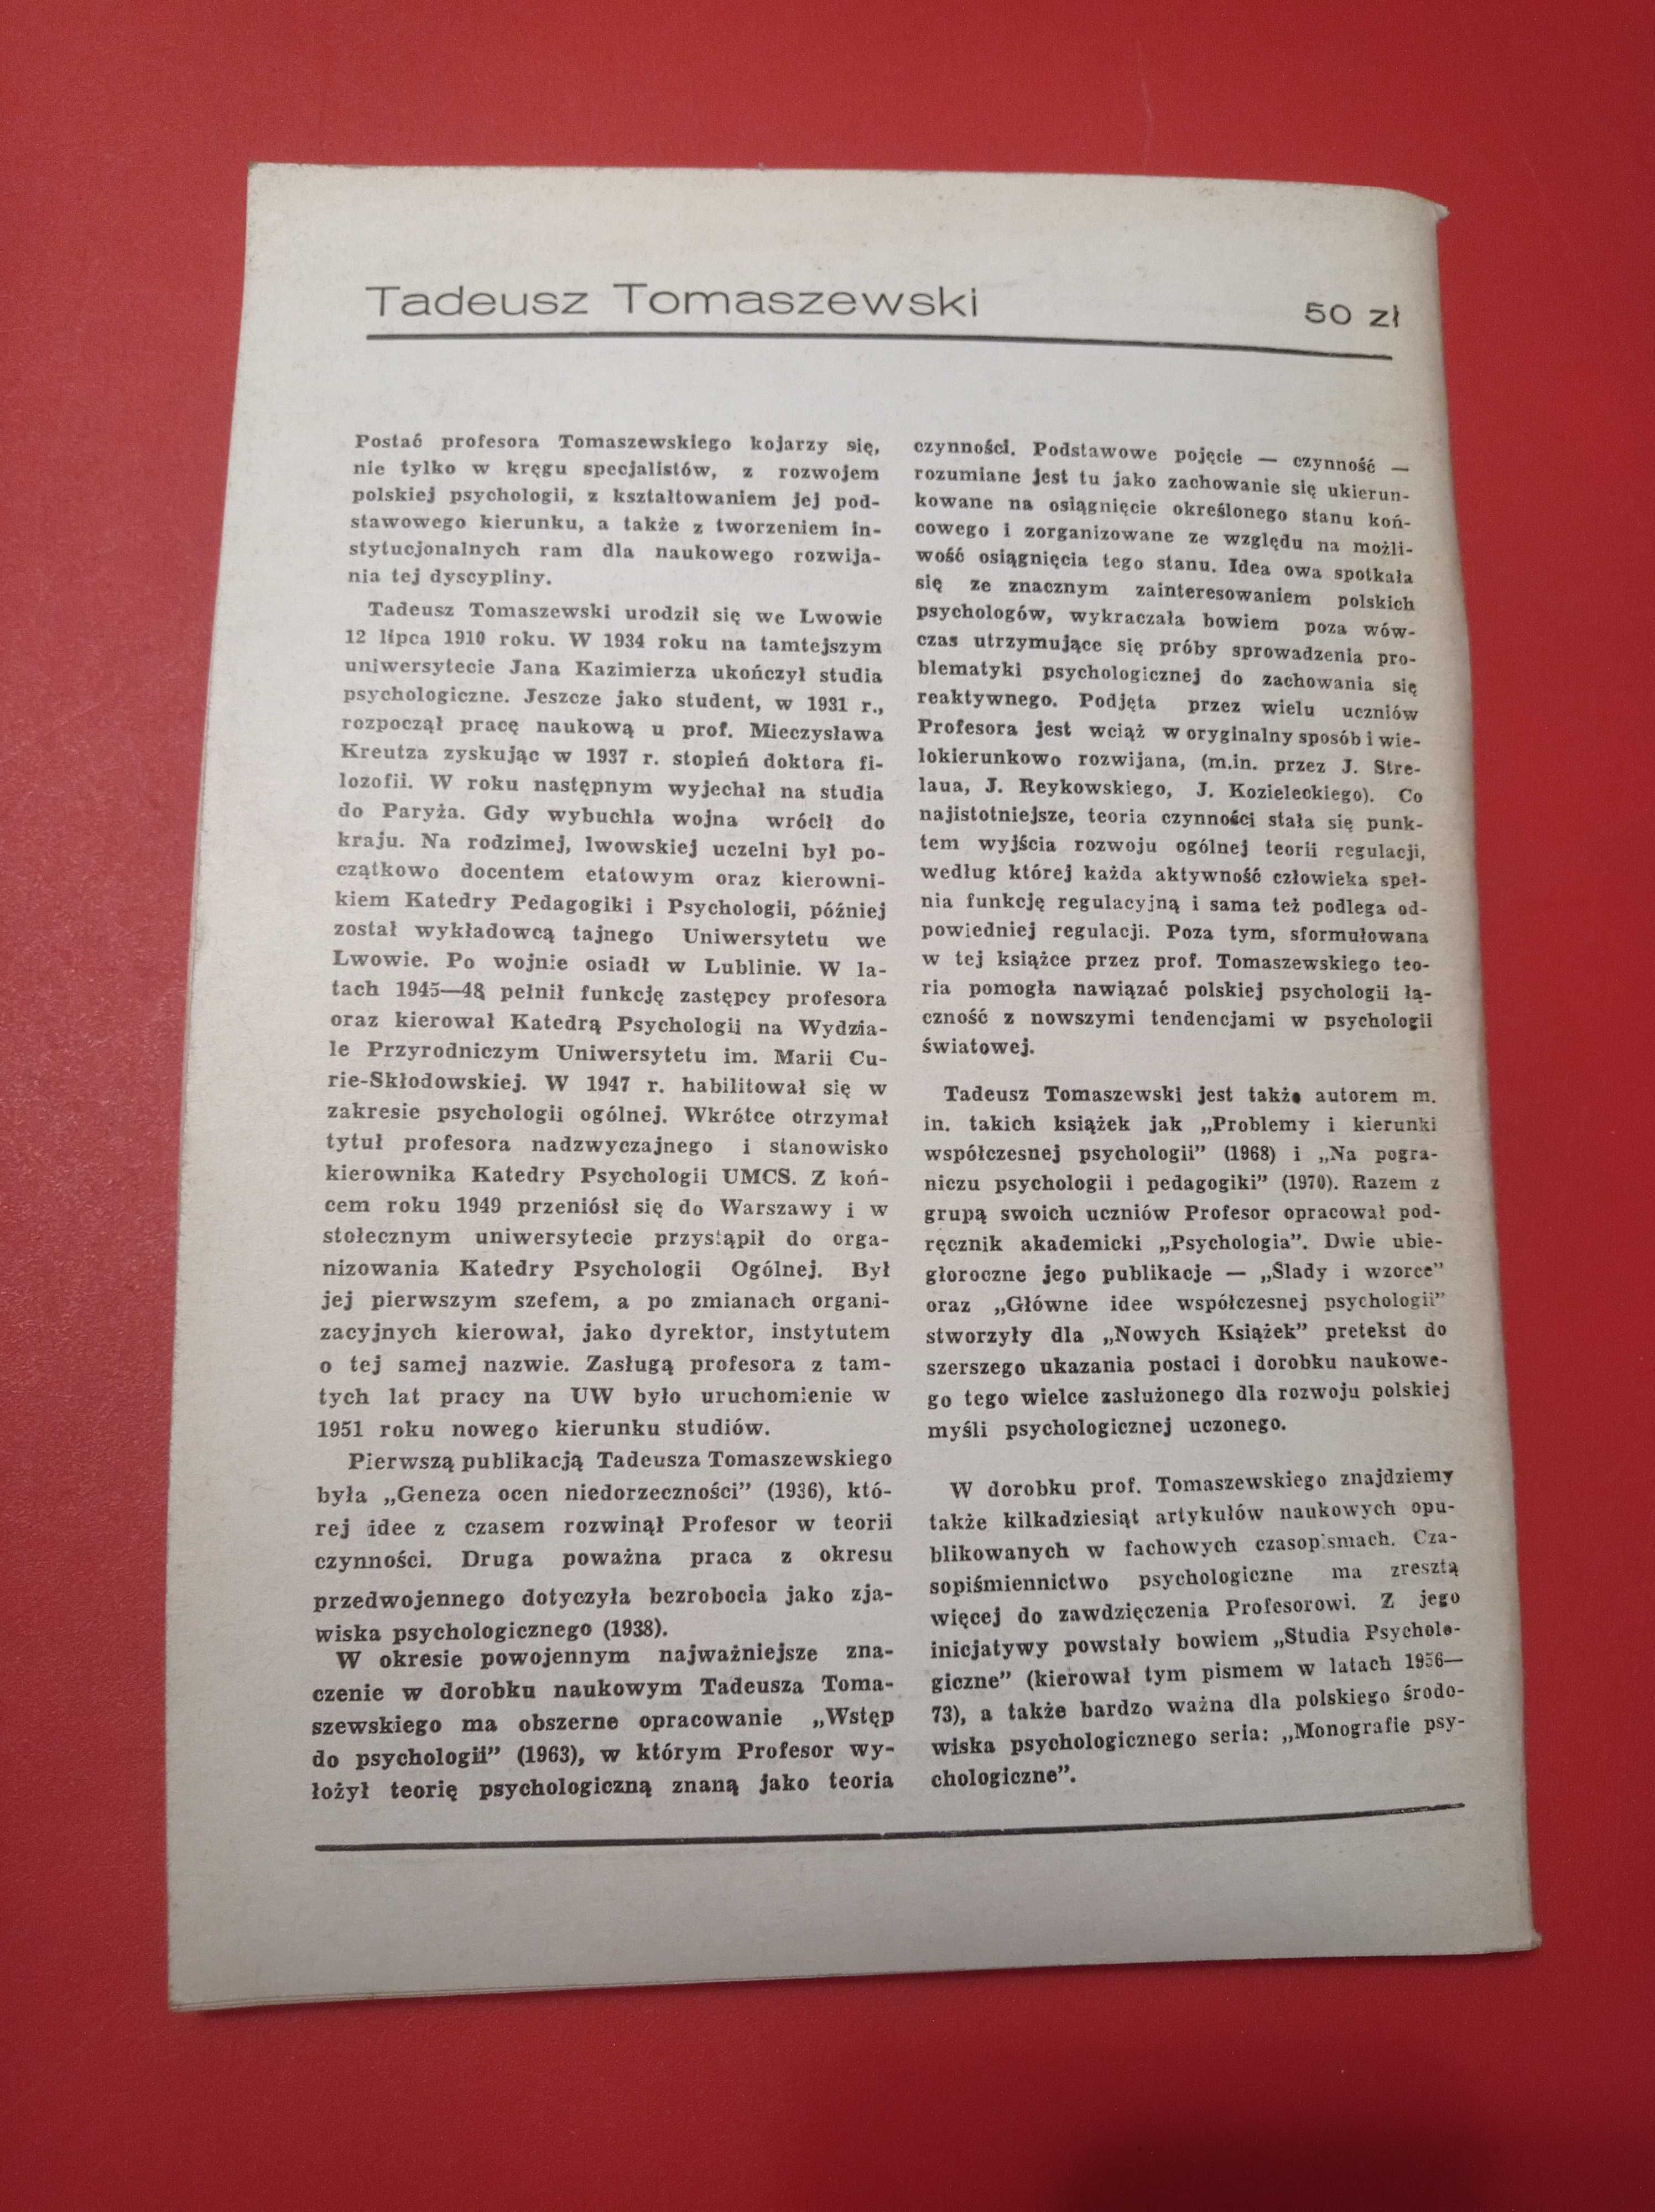 Nowe książki, nr 1, styczeń 1985, Tadeusz Tomaszewski